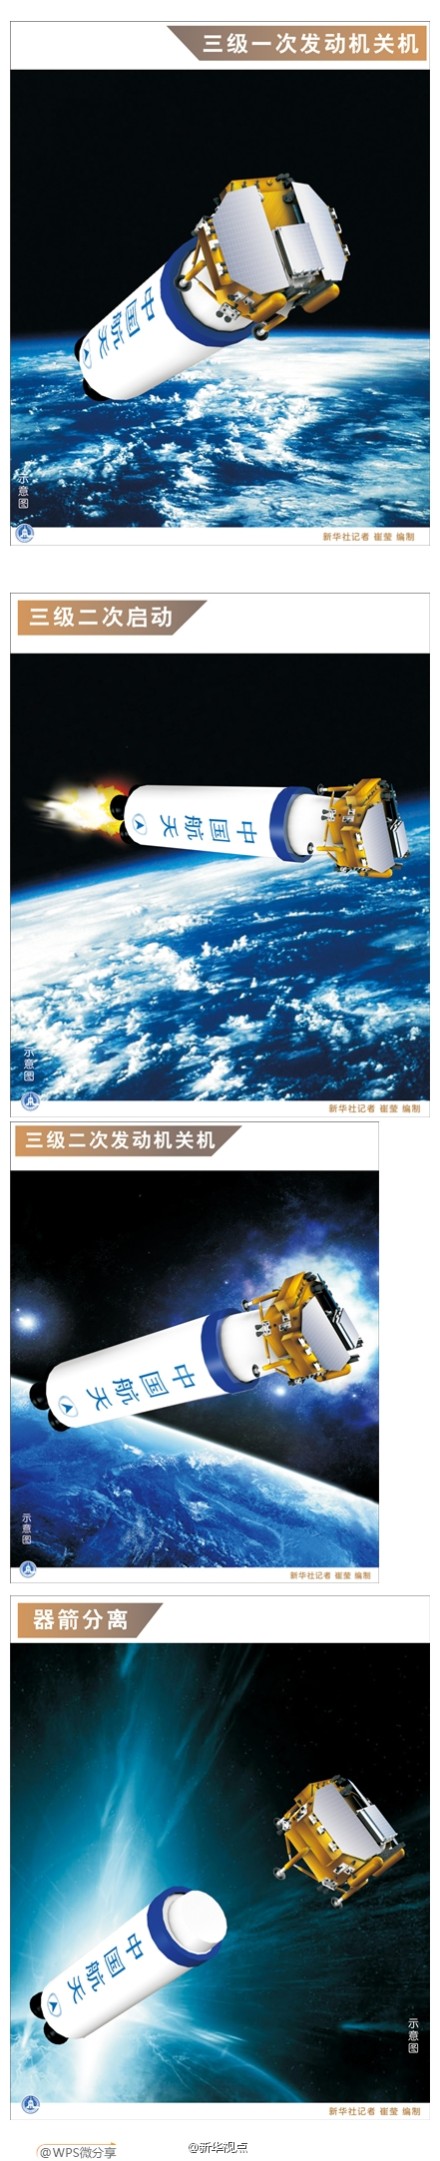 图表解析嫦娥三号发射过程(图)